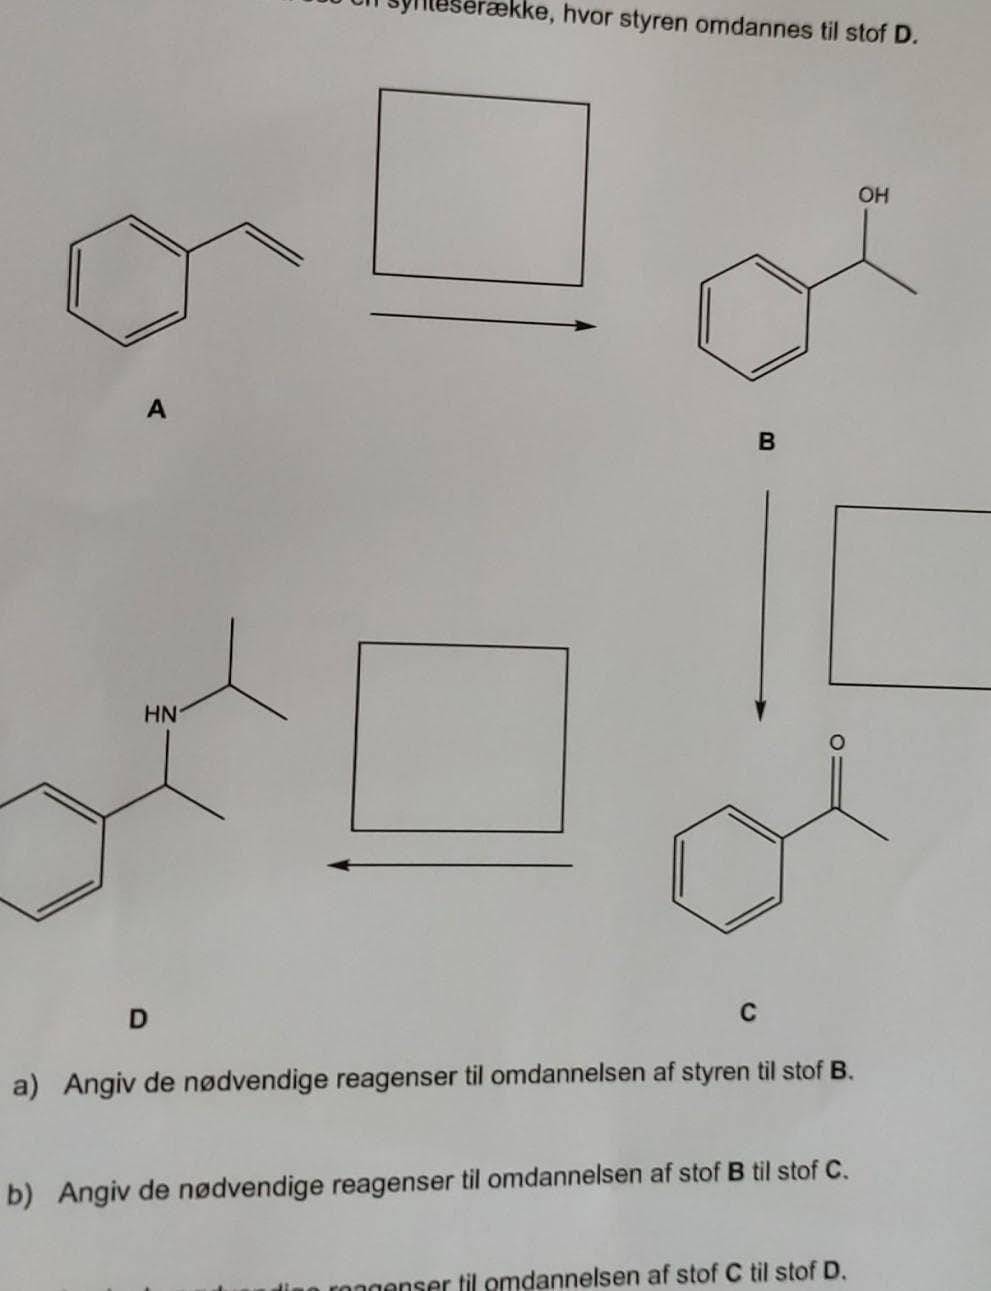 ække, hvor styren omdannes til stof D.
OH
HN
C
a) Angiv de nødvendige reagenser til omdannelsen af styren til stof B.
b) Angiv de nødvendige reagenser til omdannelsen af stof B til stof C.
o rongenser til omdannelsen af stof C til stof D.
